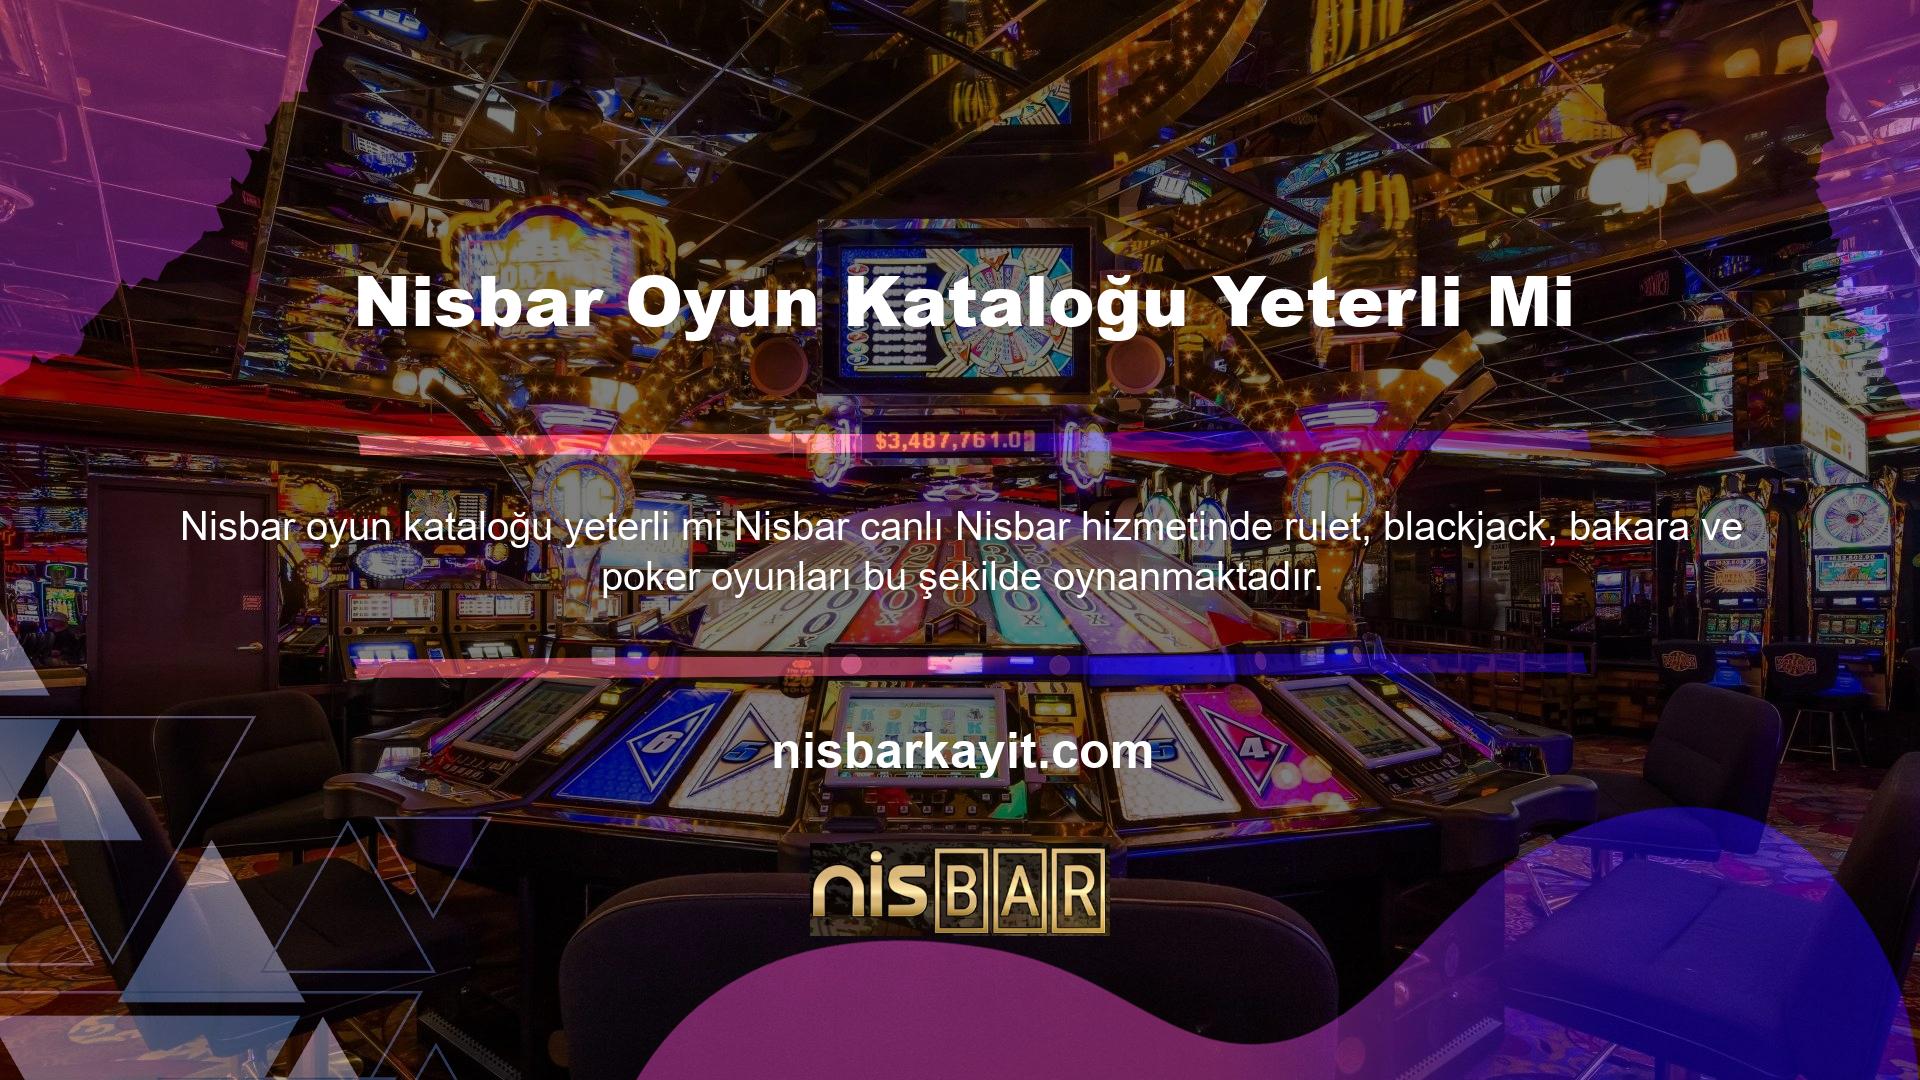 Nisbar çok para kazanan yasa dışı Nisbar severlerden biri ancak canlı Nisbar oyunlarına karşı benzer bir güvensizlik Nisbar de mevcut